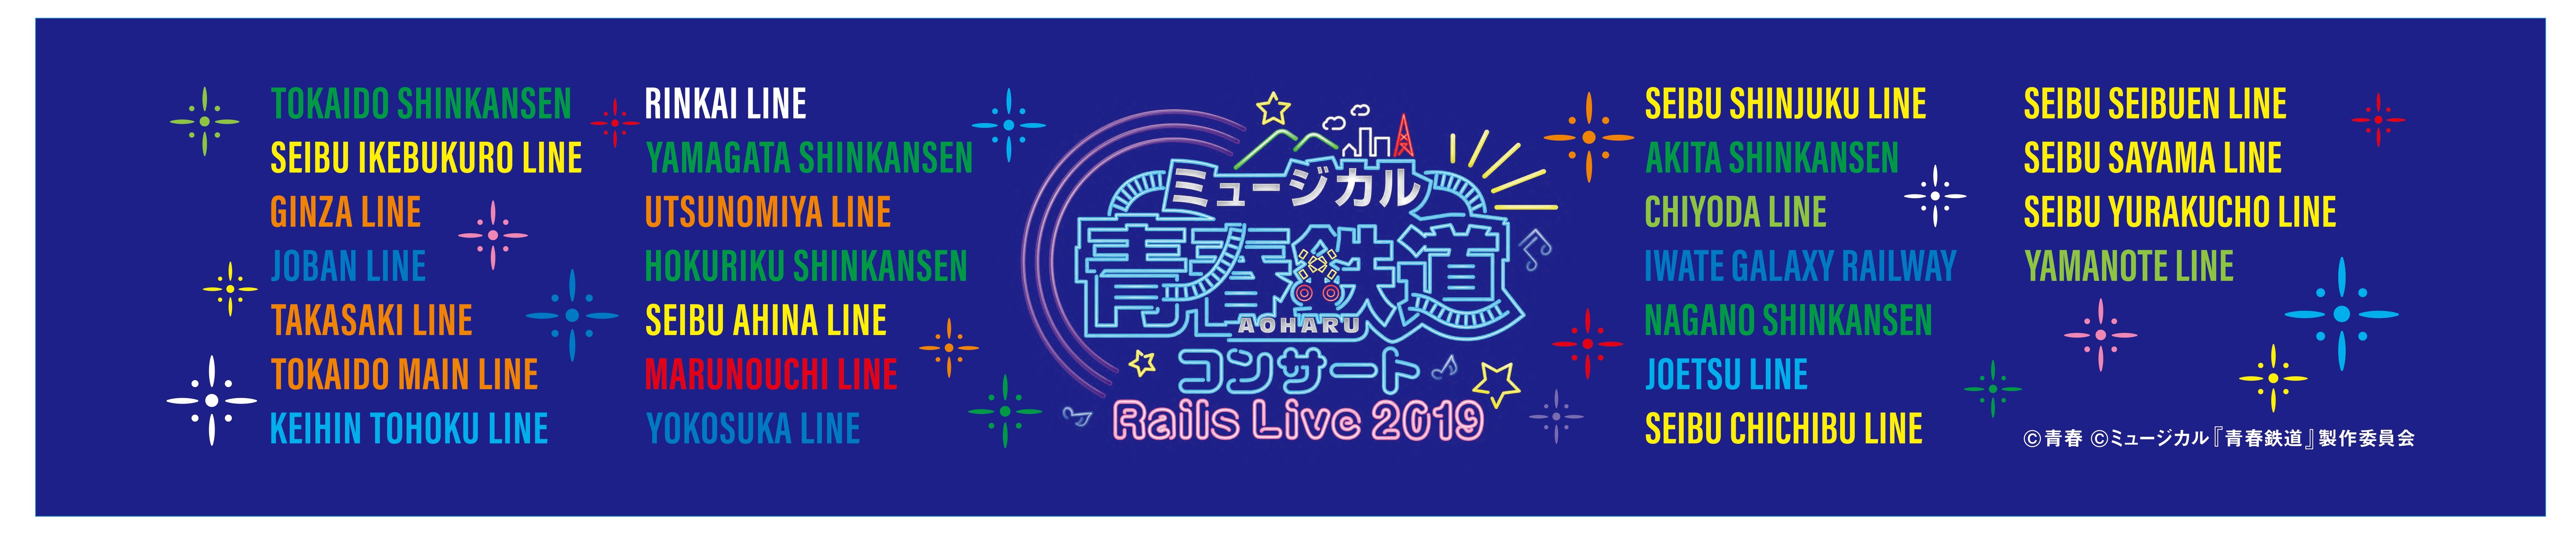 ミュージカル『青春-AOHARU-鉄道』コンサート Rails Live 2019 マフラータオルイメージ